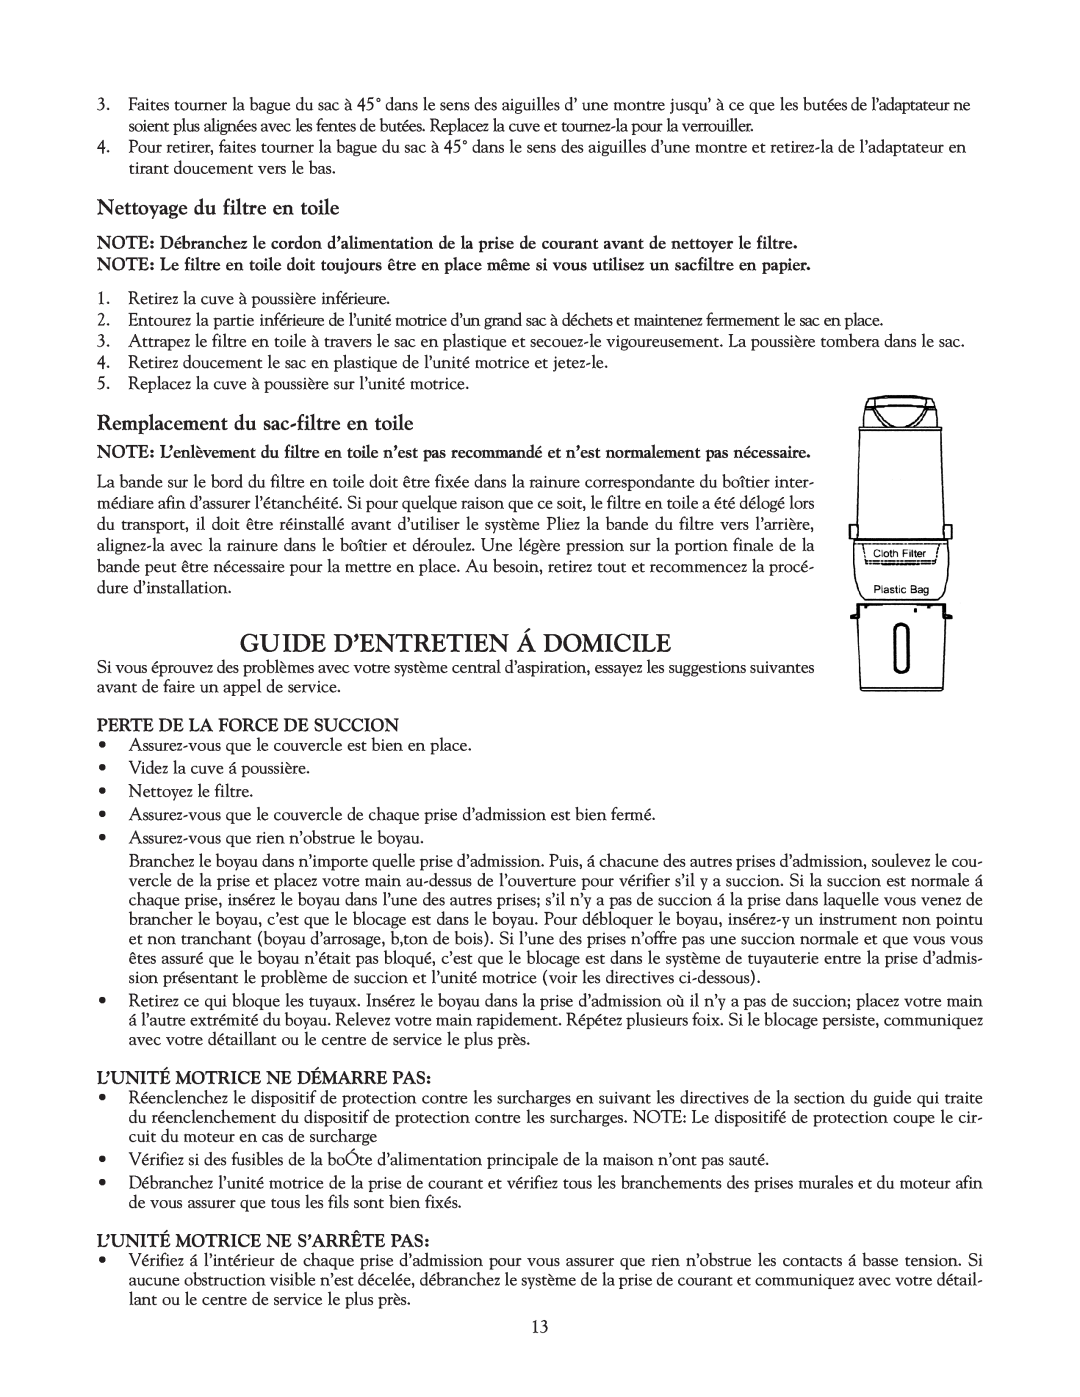 Eureka Vacuum System Cleaner Guide D’Entretien Á Domicile, Nettoyage du filtre en toile, Perte De La Force De Succion 